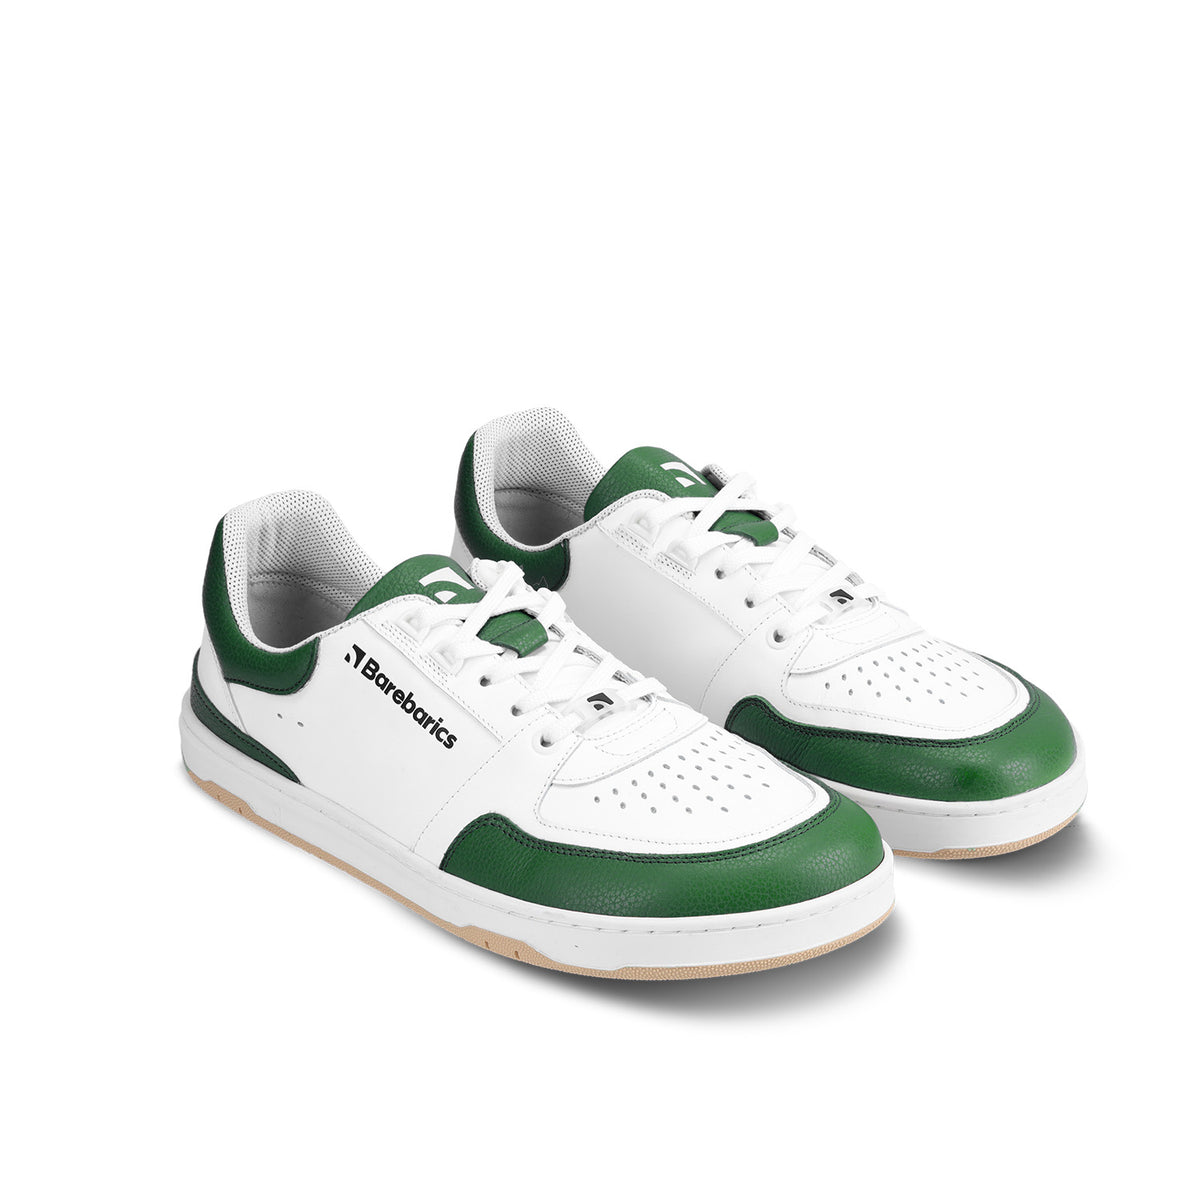 Barefoot Sneakers Barebarics Wave - White & Dark Green 3  - OzBarefoot